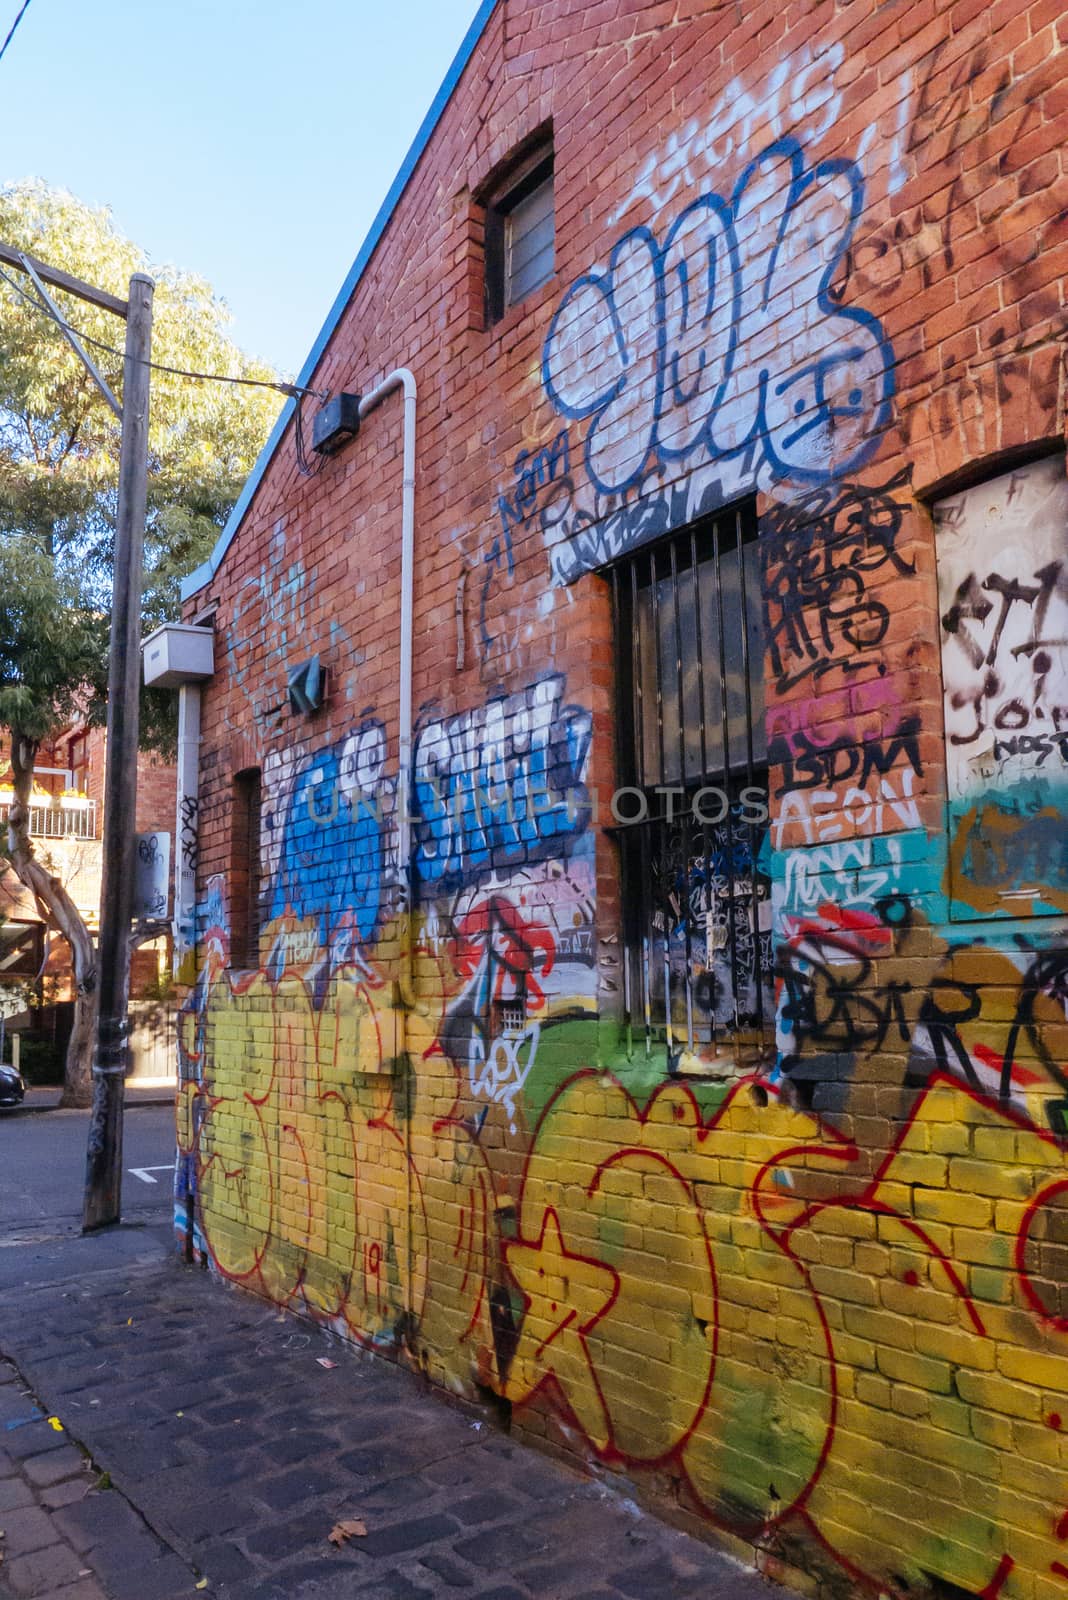 Street Art in Fitzroy Melbourne Australia by FiledIMAGE